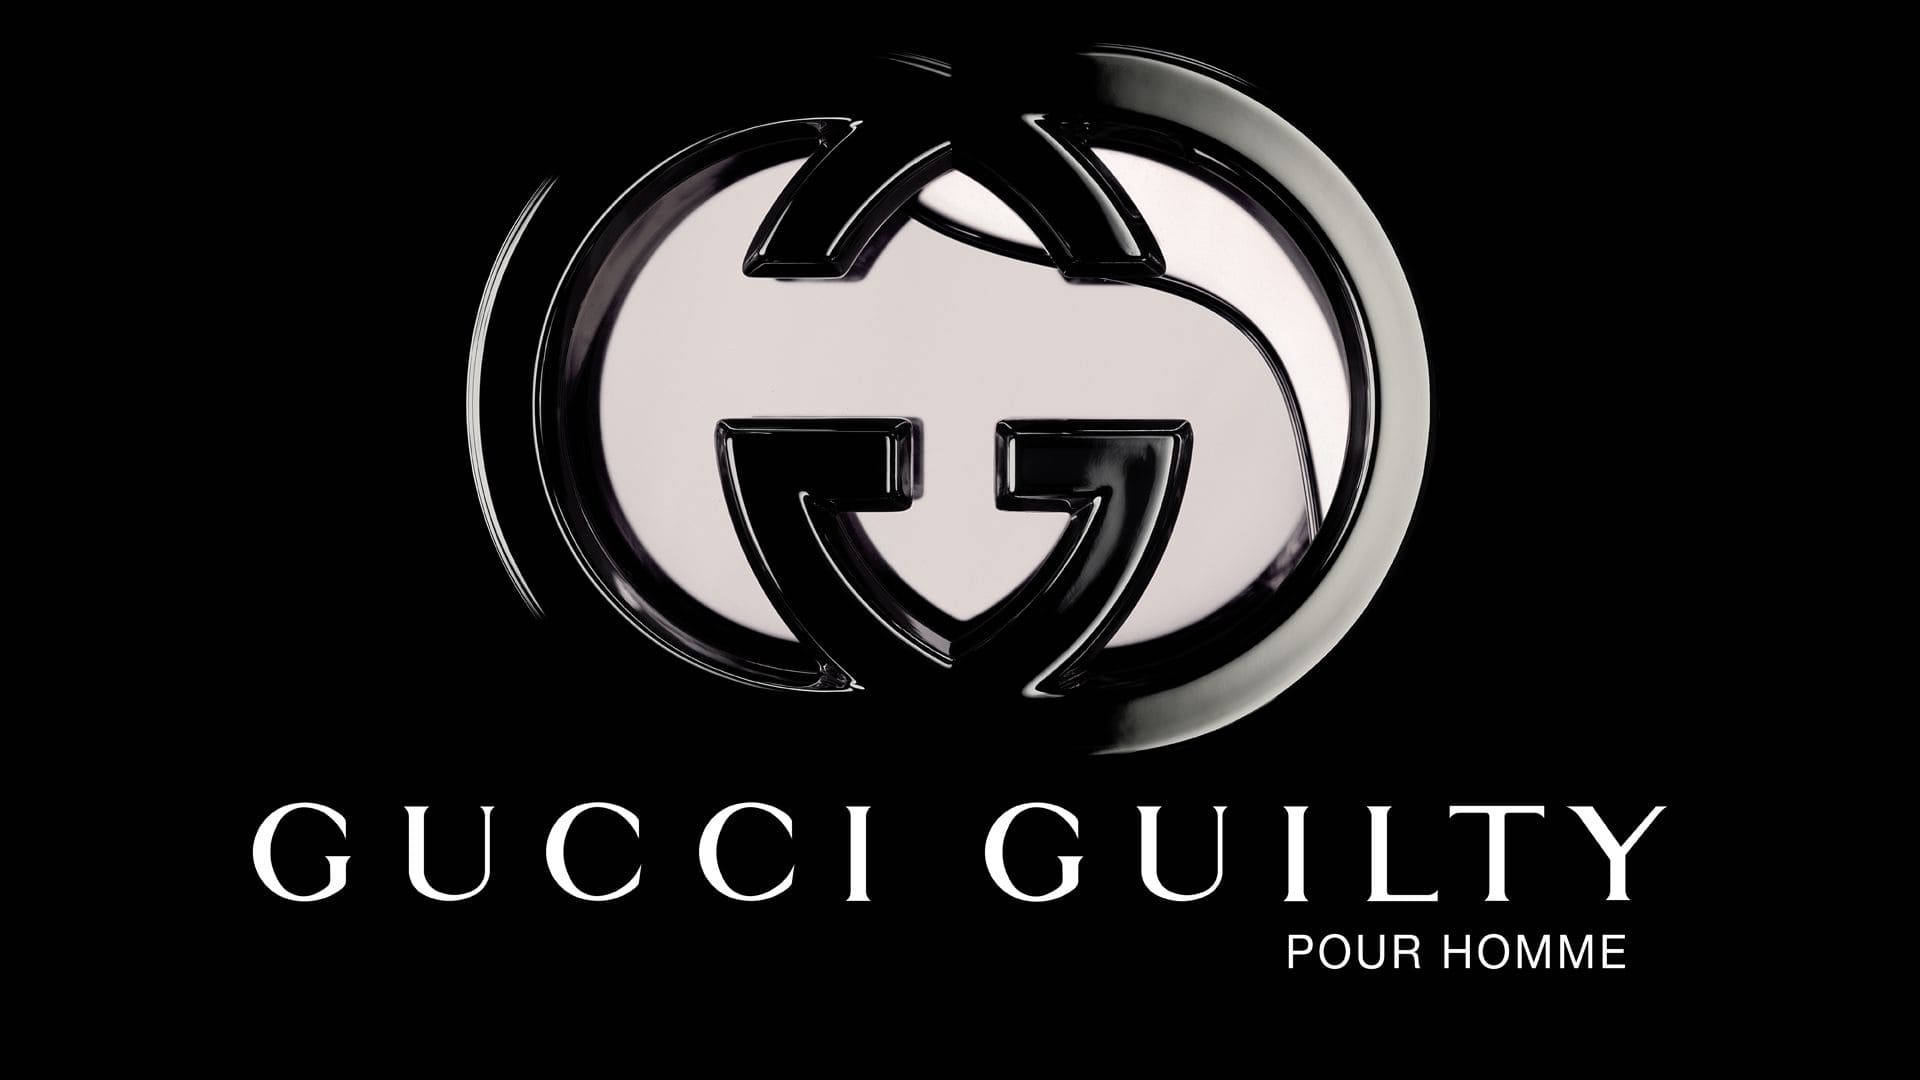 Pour Homme Gucci 4k Wallpaper